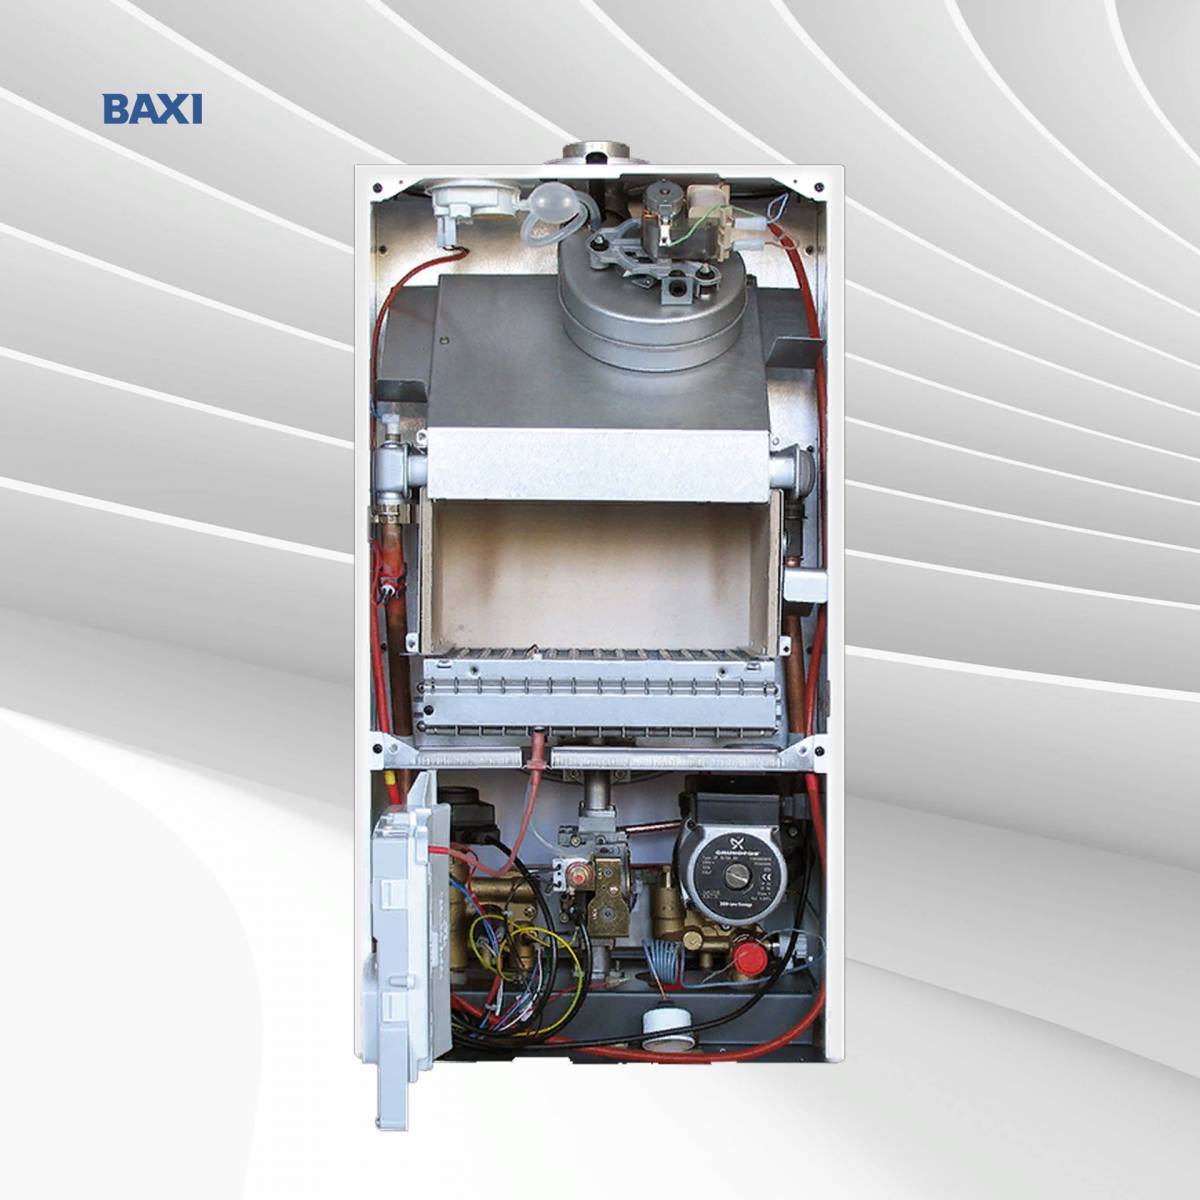 Отопительный бакси. Газовый котел Baxi FOURTECH 24 F. Газовый котел Baxi Eco-4s 1.24f. Газовый котел Baxi Eco four 24. Baxi FOURTECH 24.